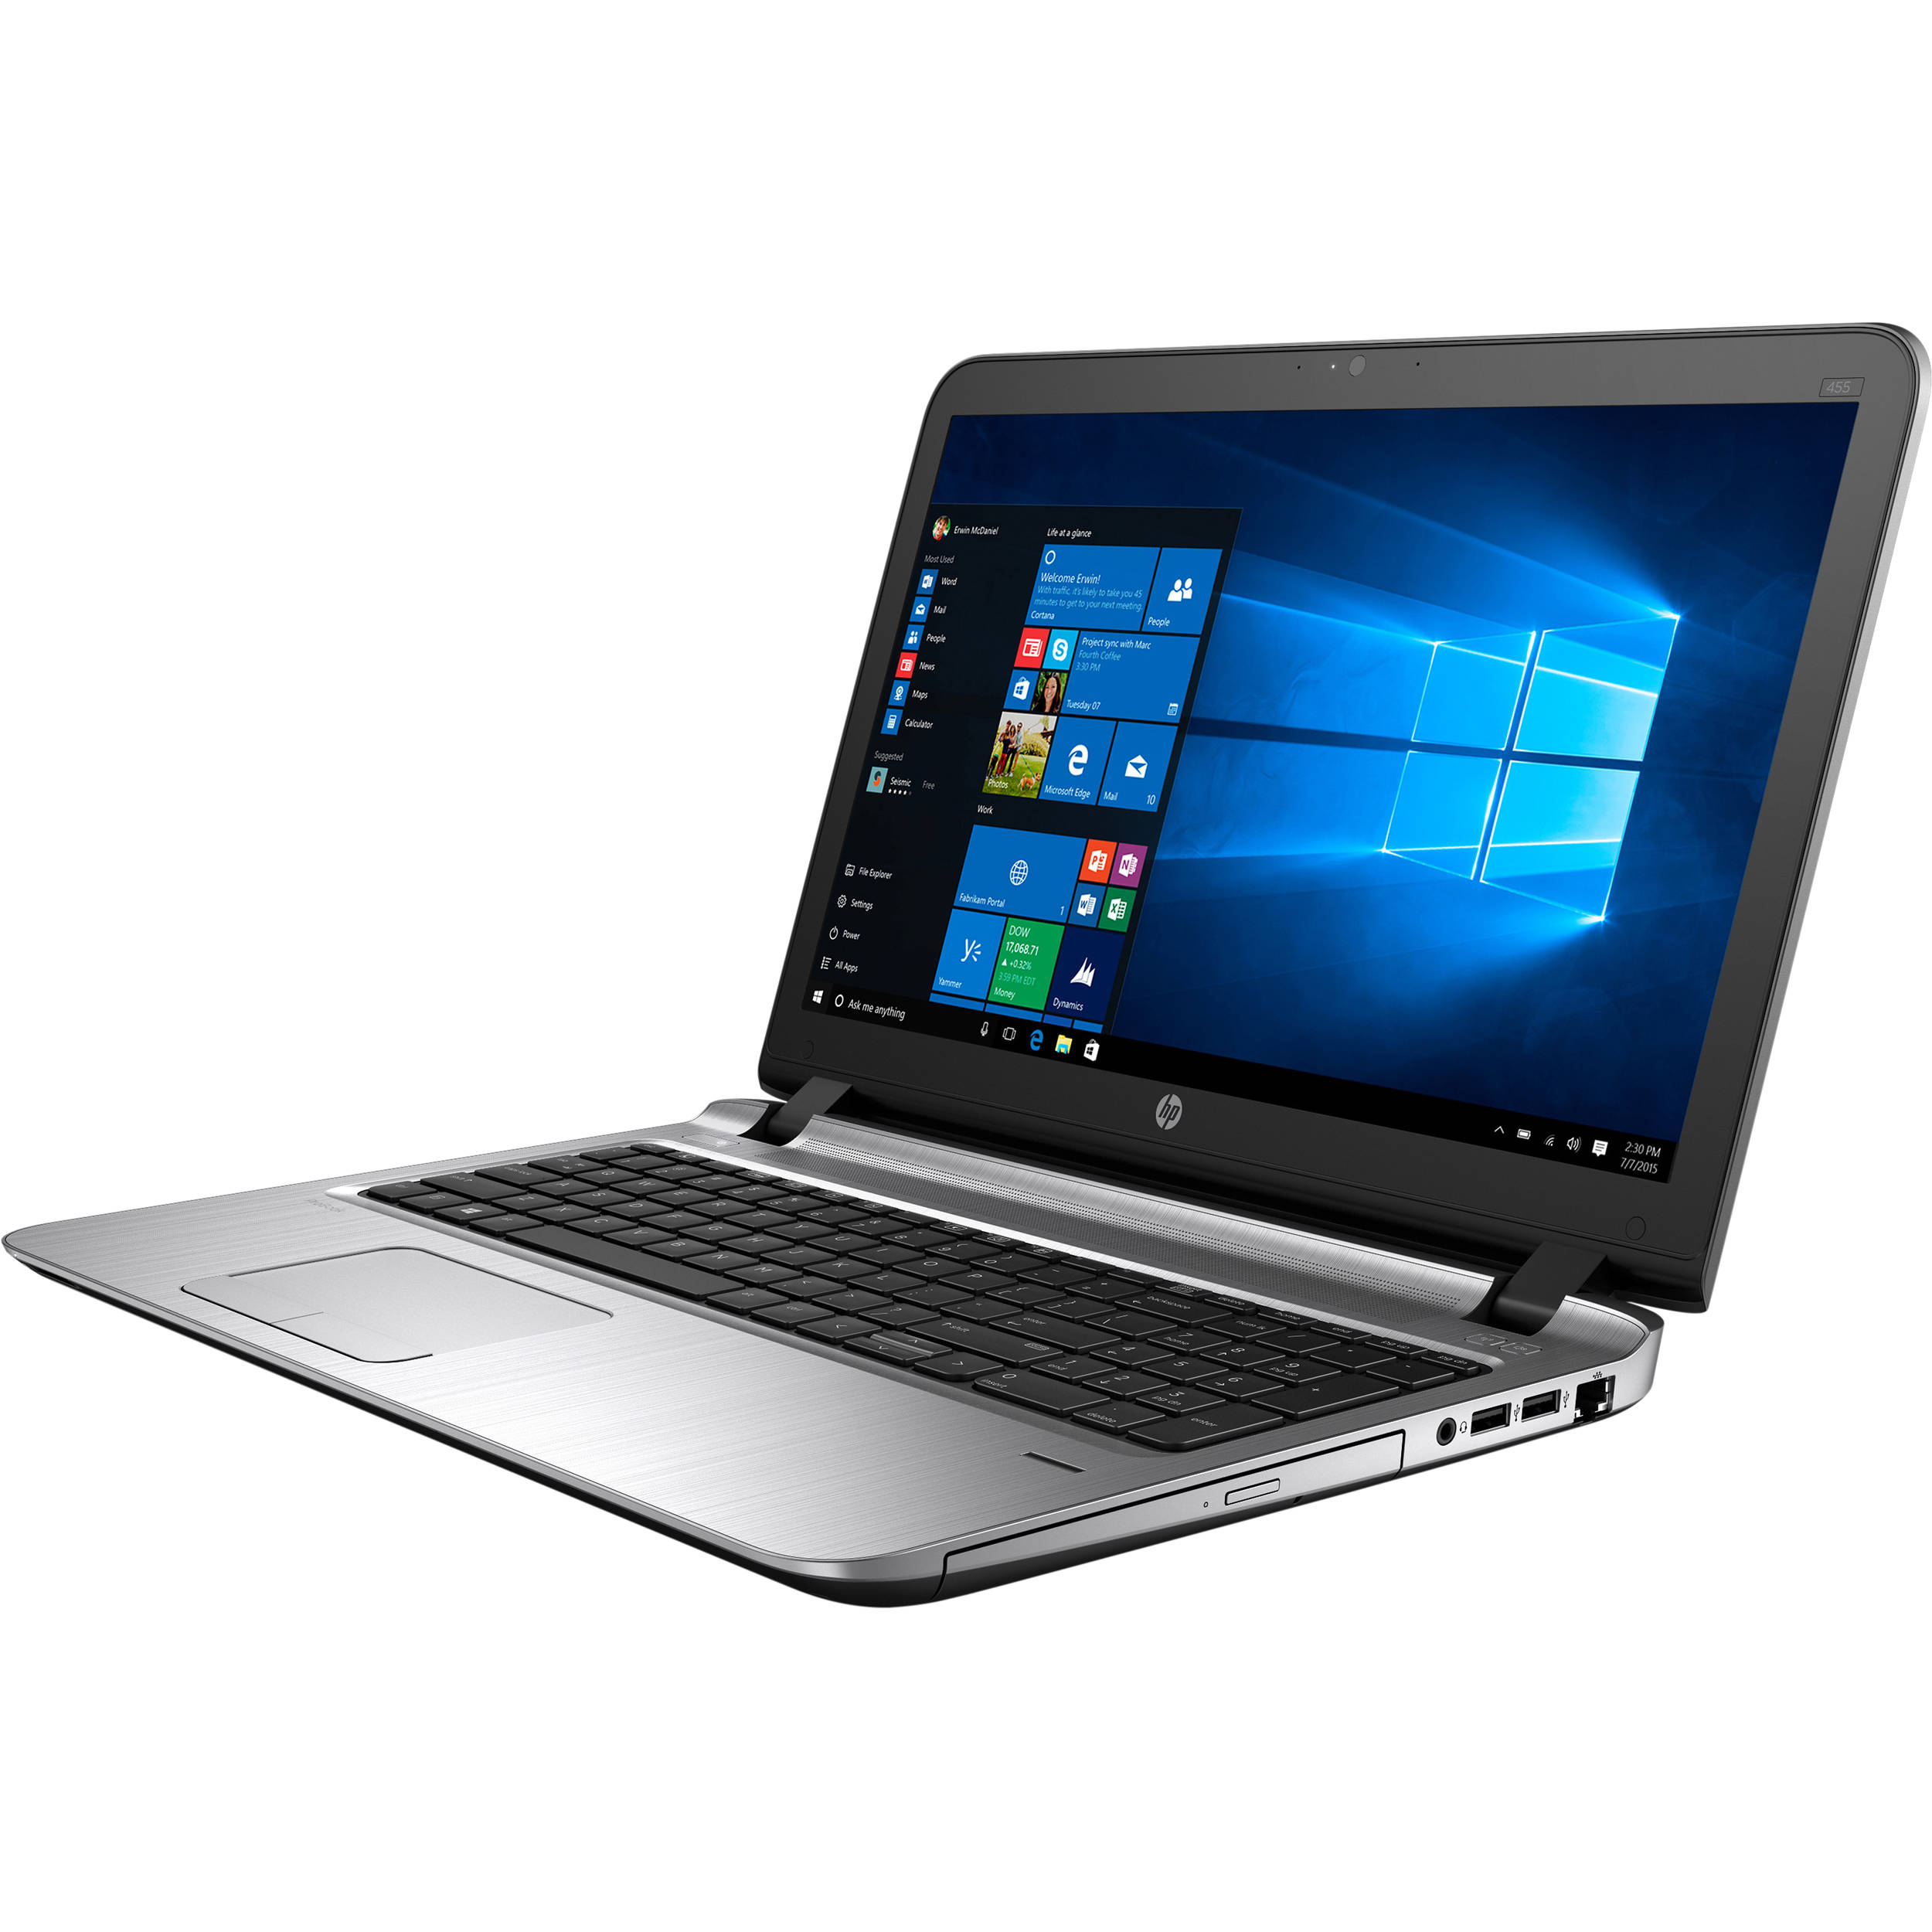 ProBook 470 G3 Notebook PC